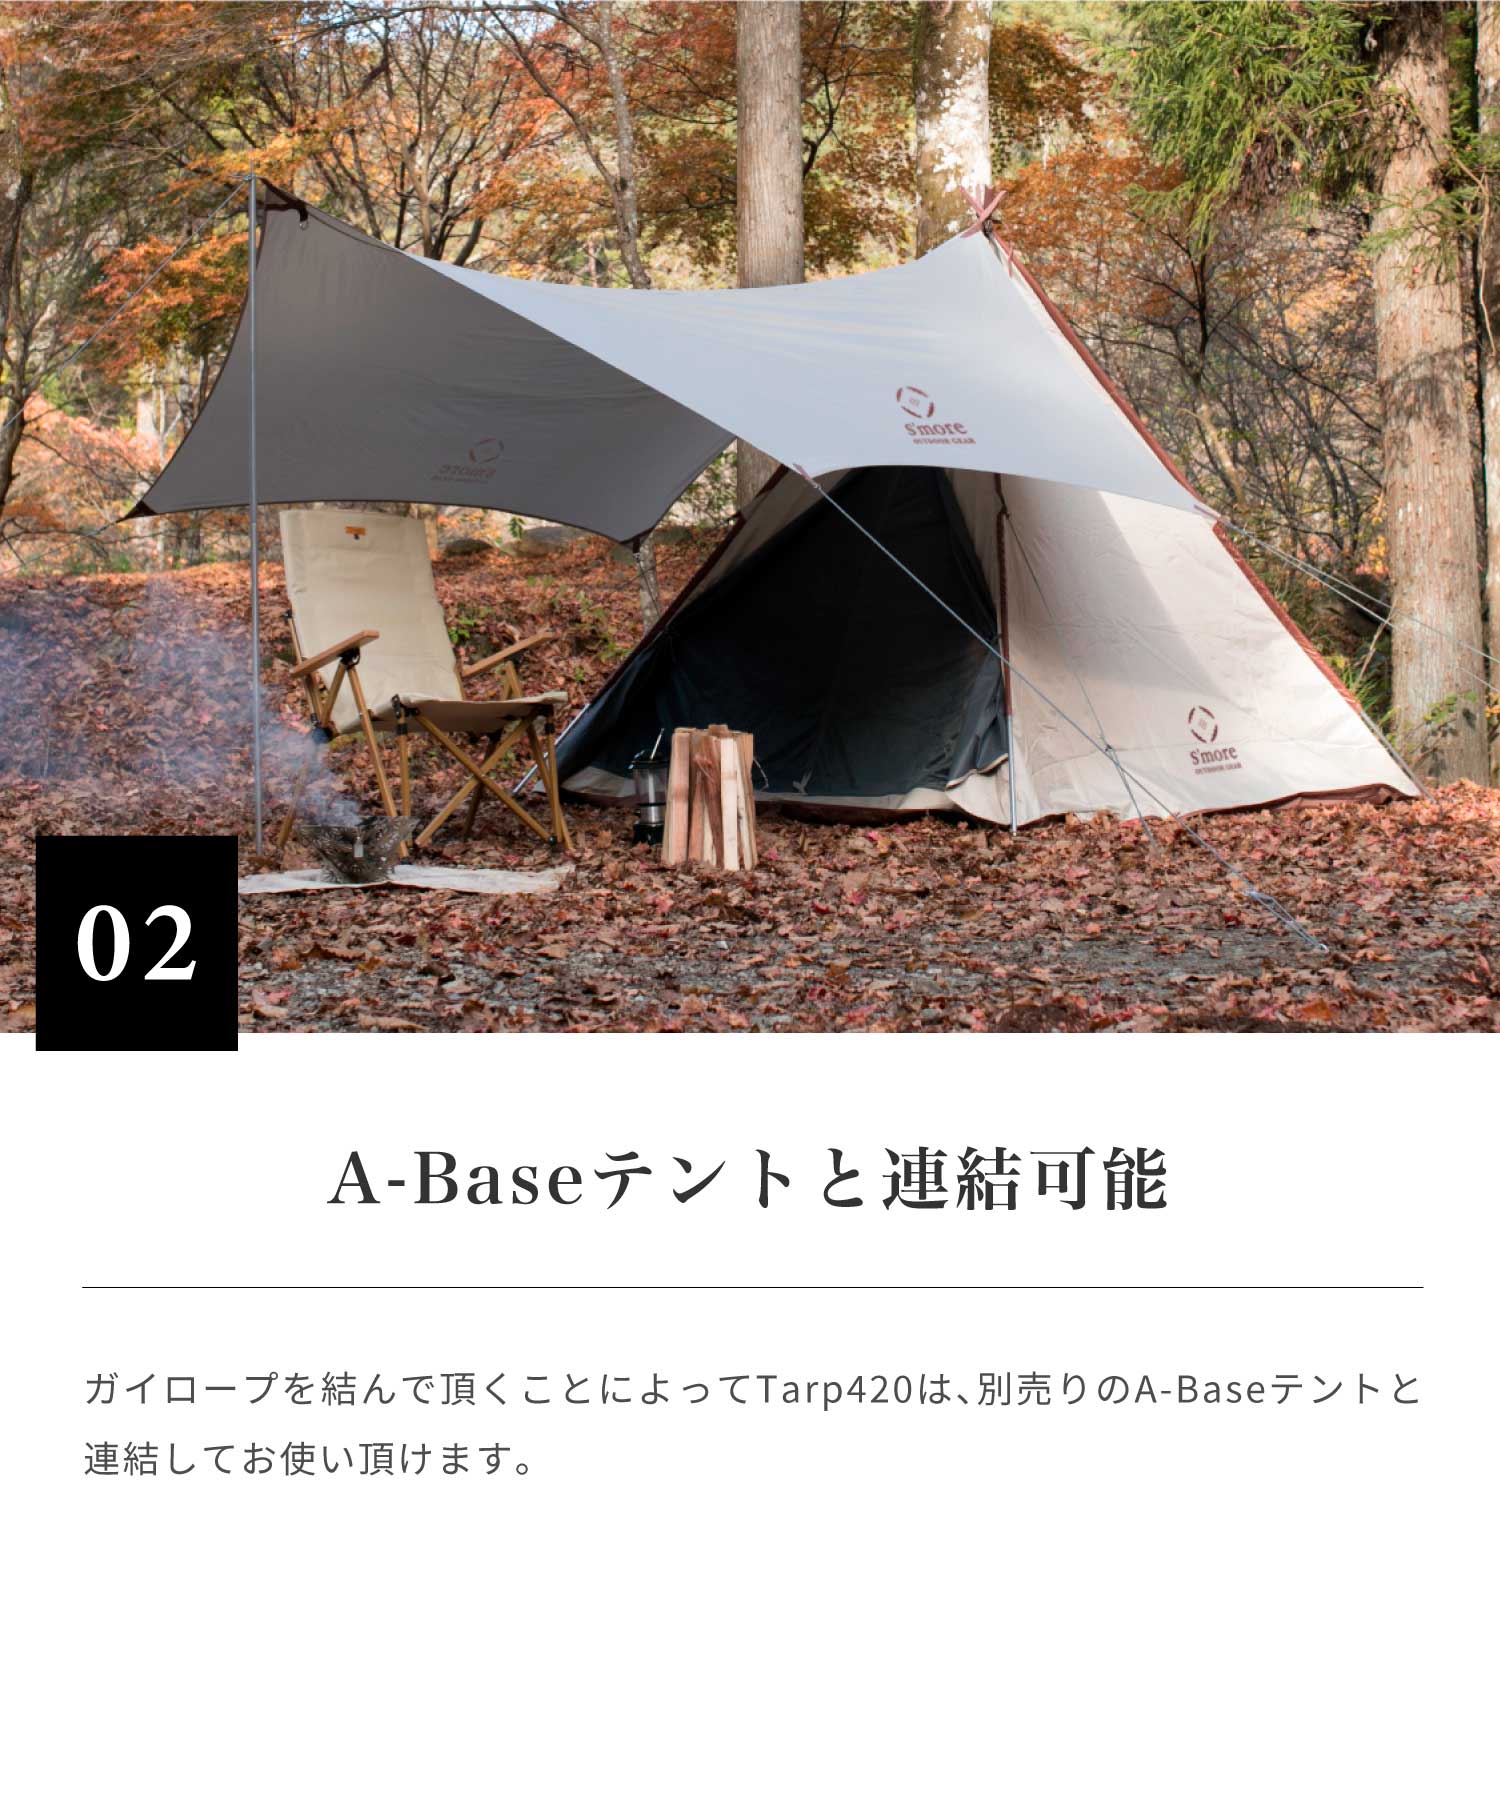 スモア タープ A-Base tent Tarp 420